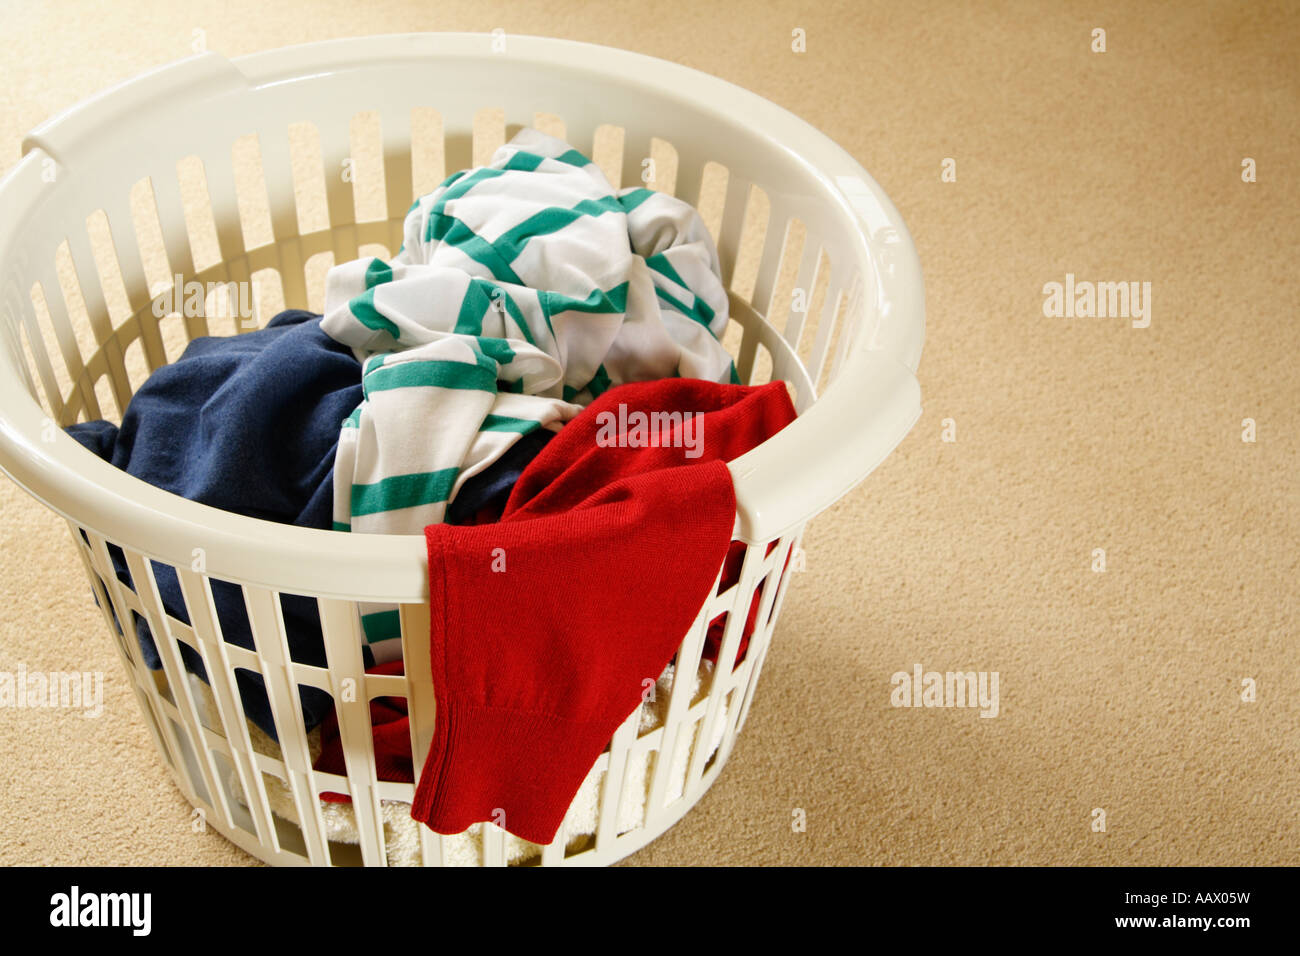 La ropa sucia está llenando una cesta de ropa en el baño.